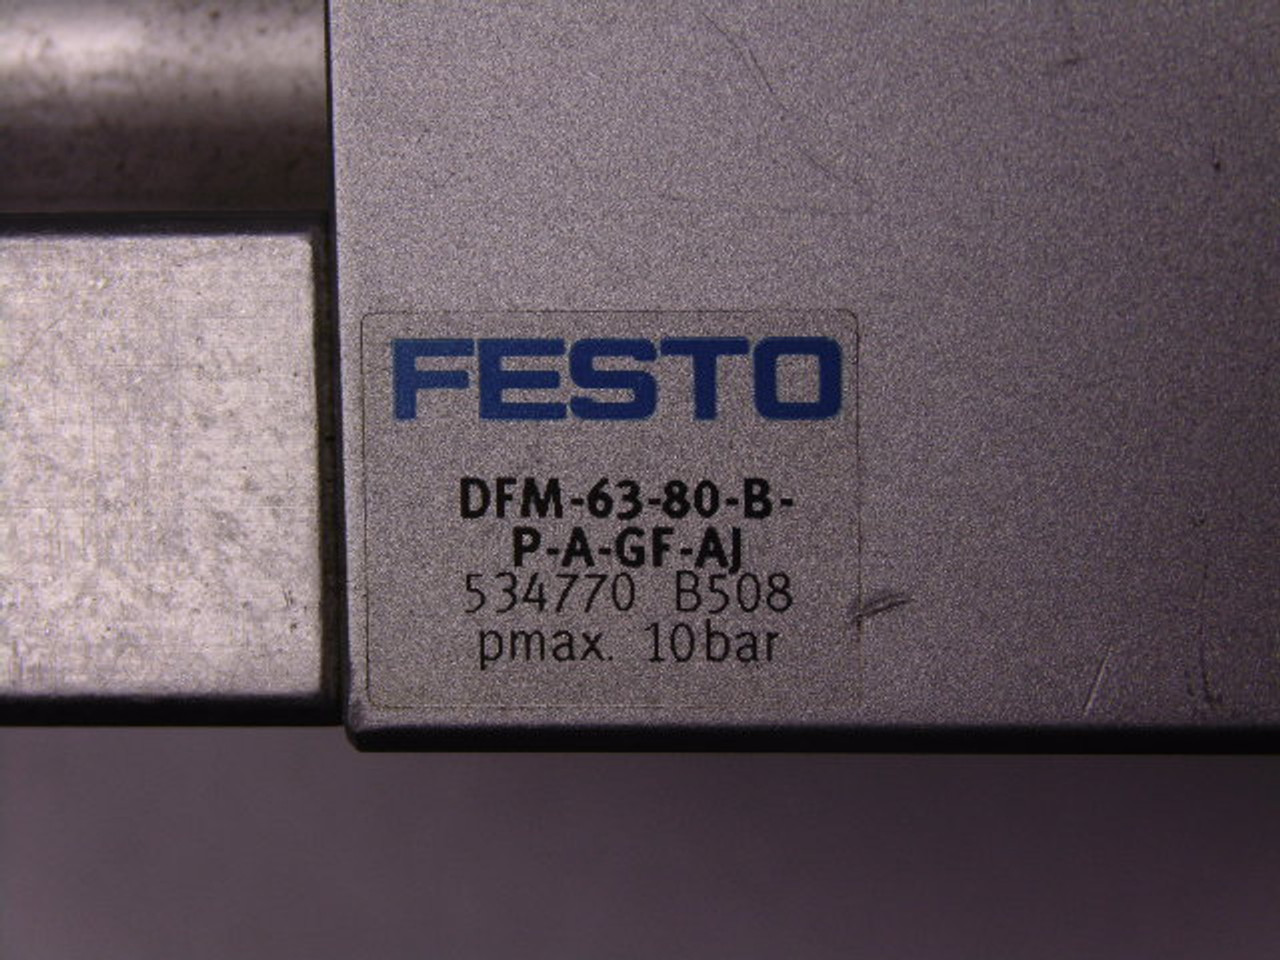 Festo DFM-63-80-B-P-A-GF-AJ Guided Drive USED